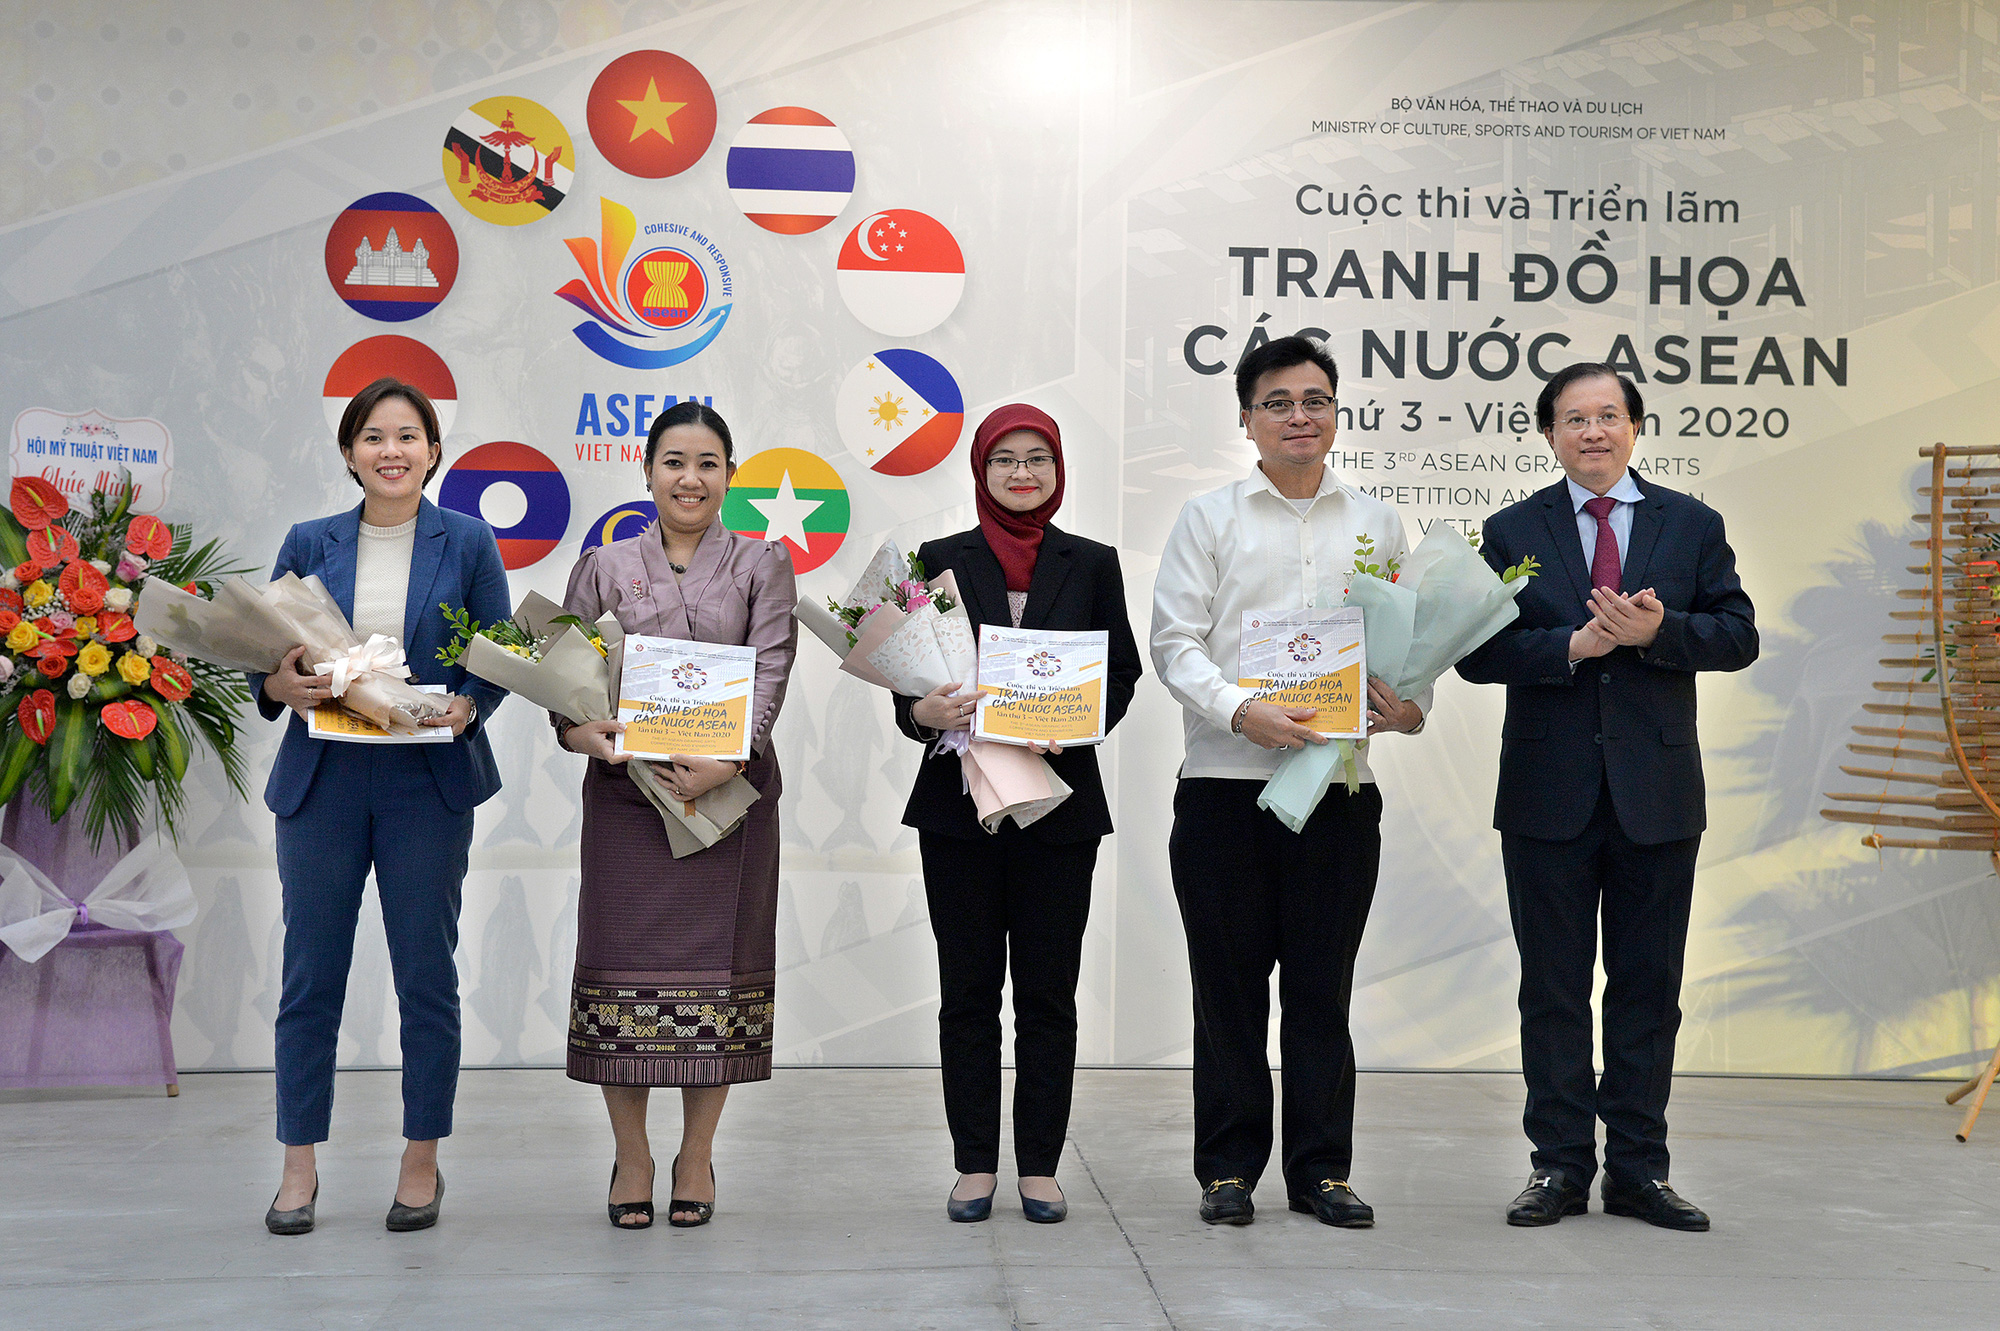 Khai mạc Cuộc thi và Triển lãm Tranh Đồ họa các nước ASEAN 2020 - Ảnh 4.